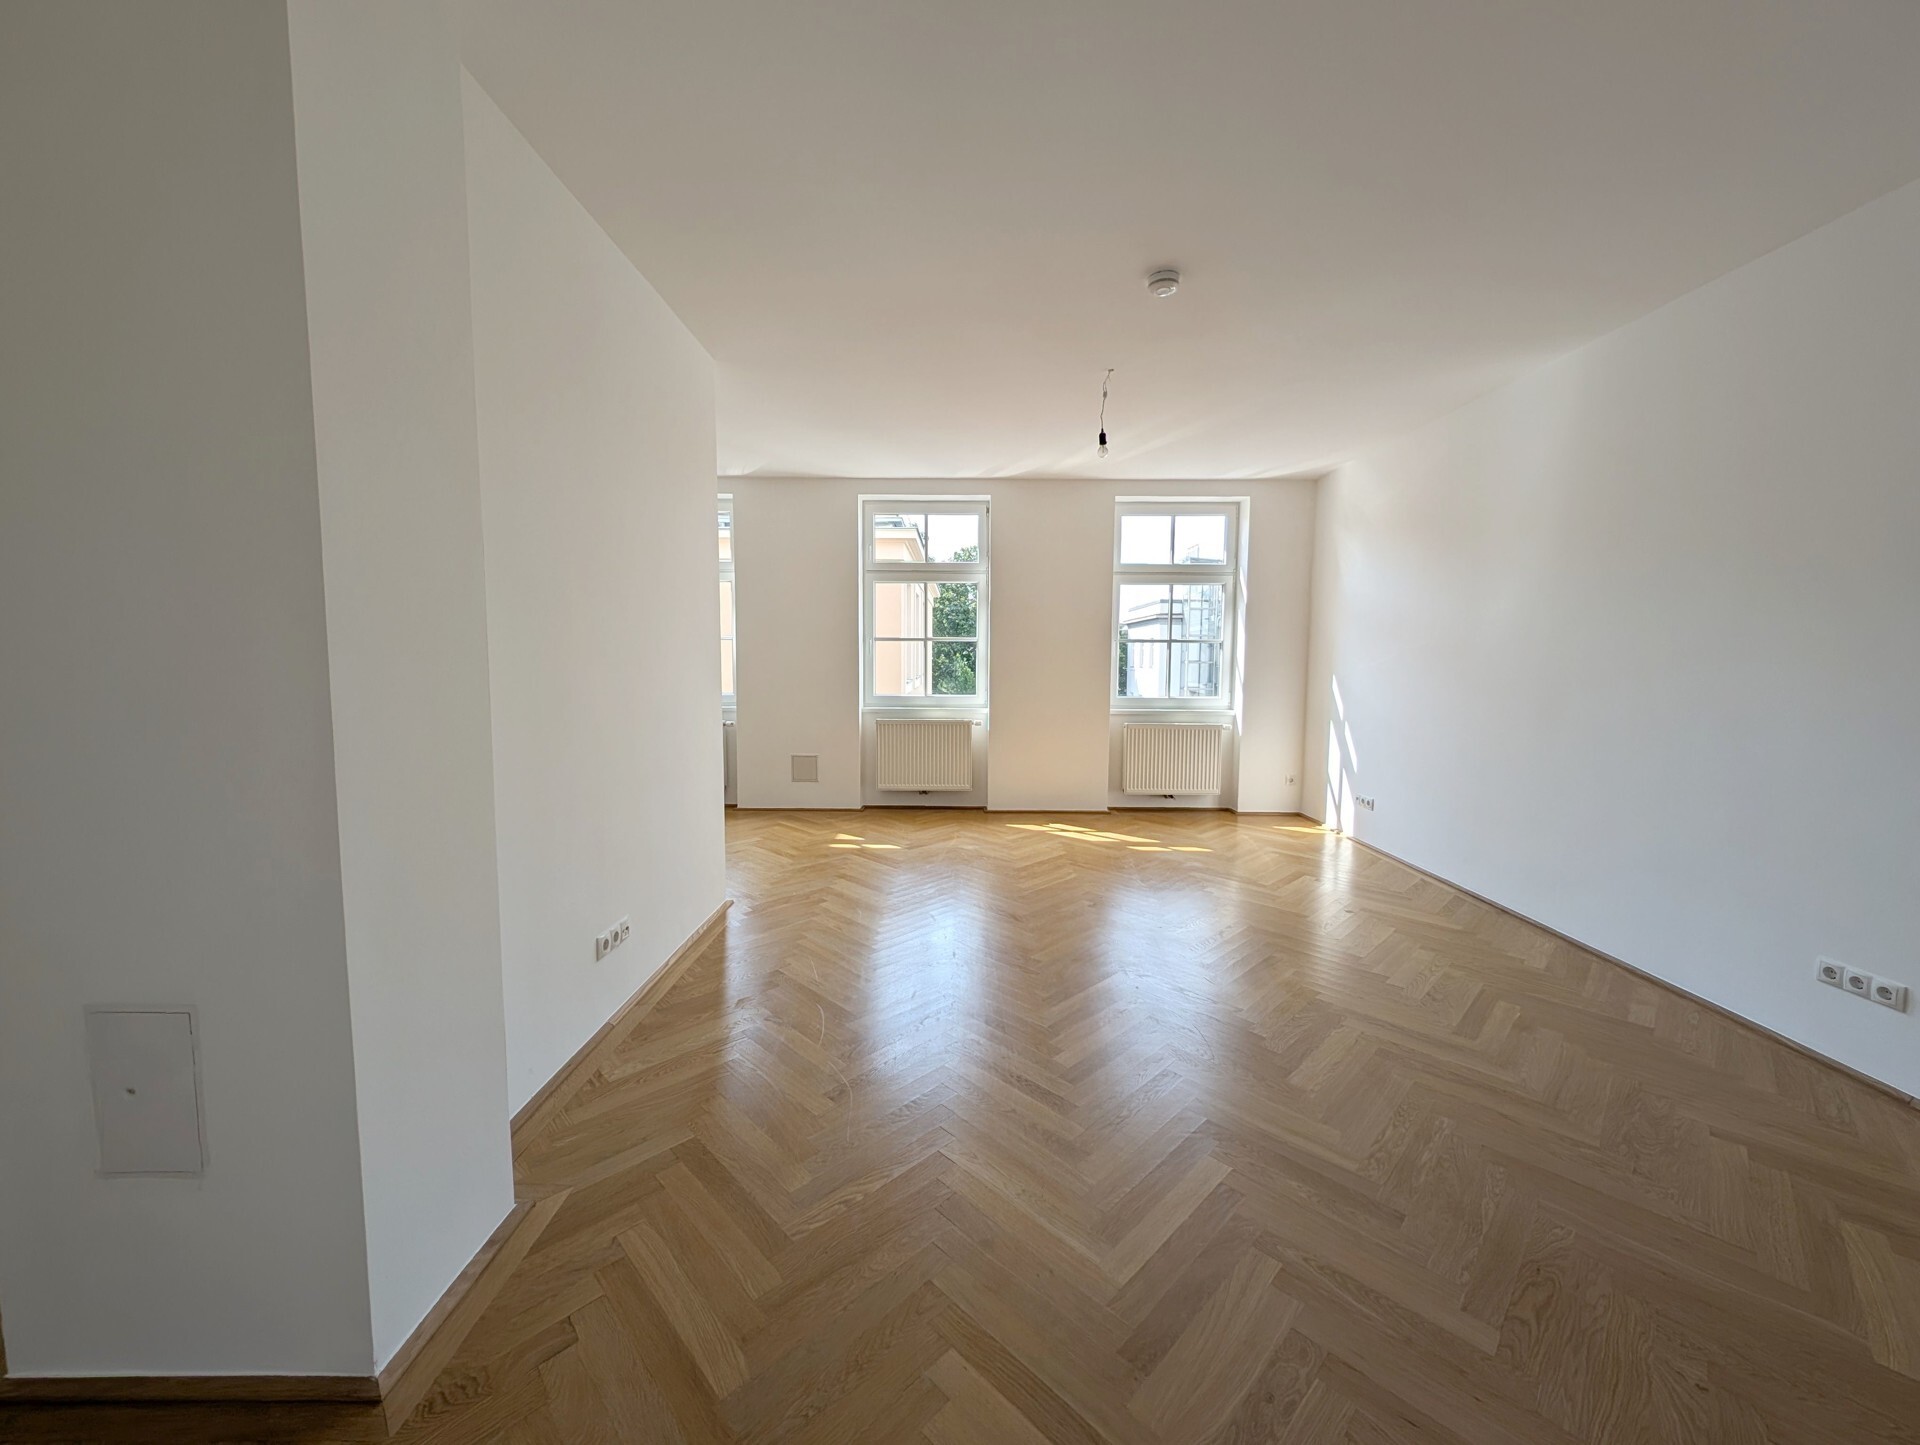 Großartige 4-Zimmer Altbau-Wohnung mit Loggia an der Lainzer Straße in 1130 Wien zu mieten